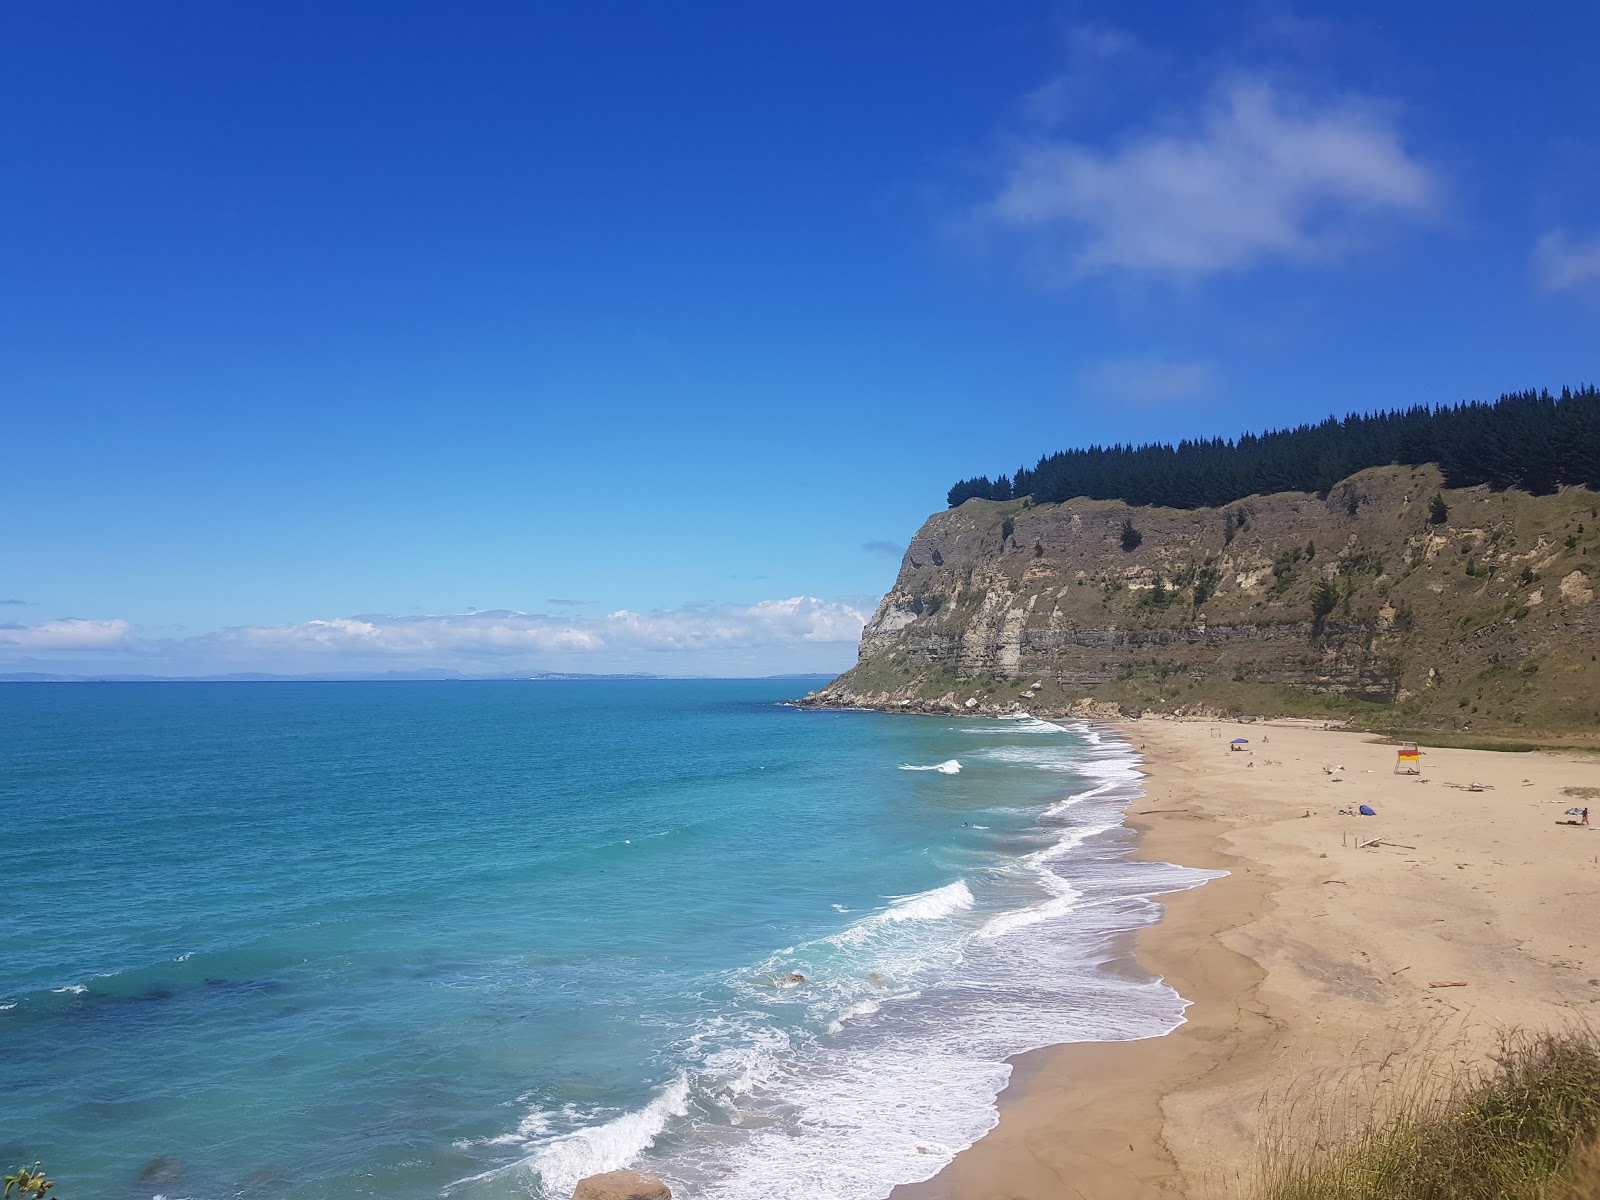 Waipatiki Beach'in fotoğrafı geniş plaj ile birlikte